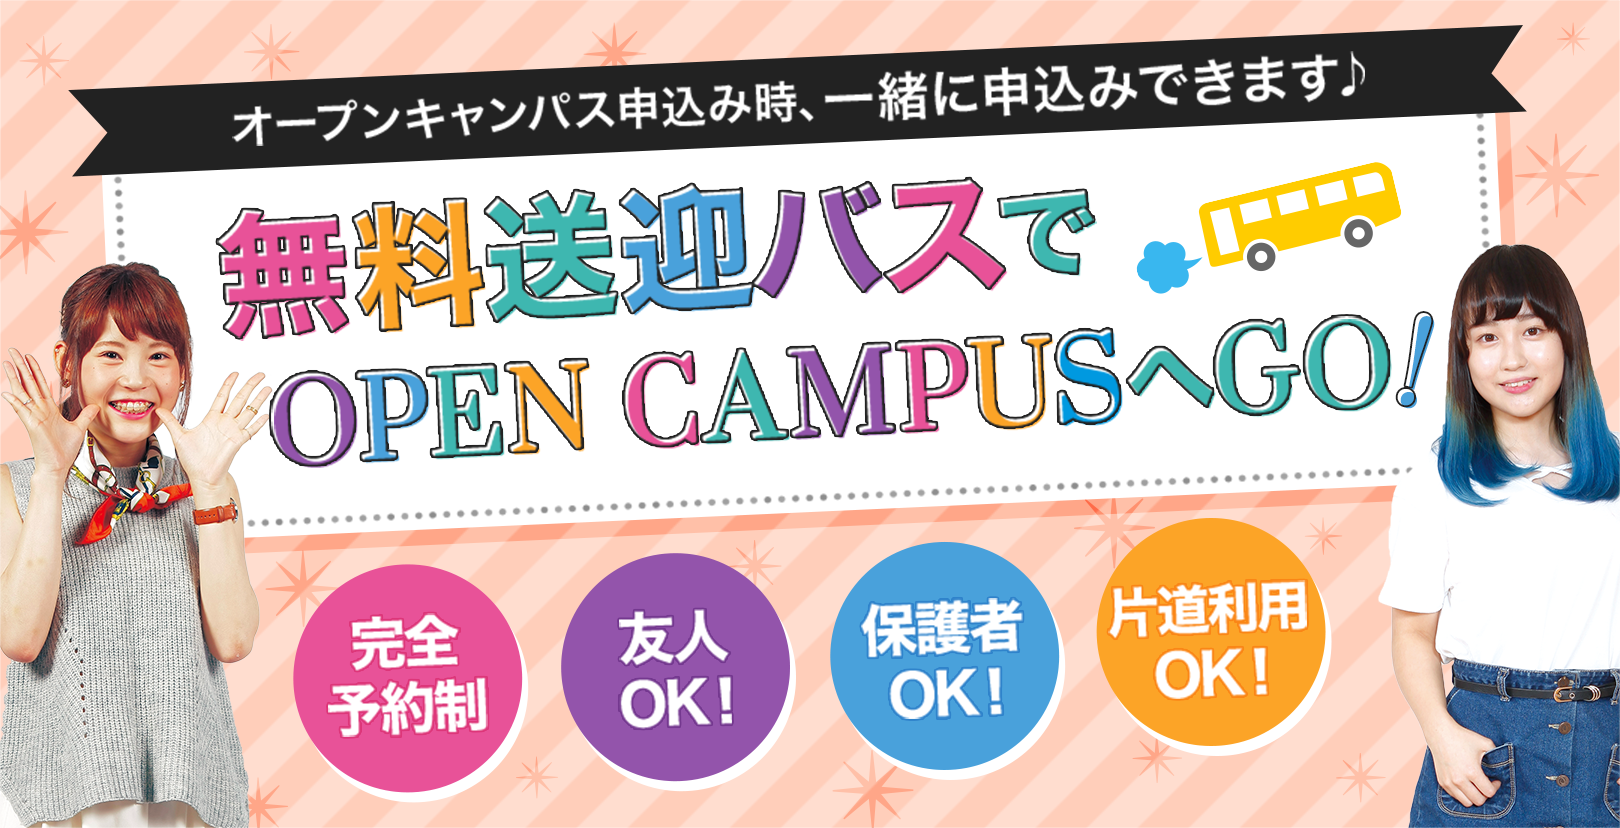 オープンキャンパス申込み時に一緒に申込みできます♪無料送迎バスでオープンキャンパスへGO!